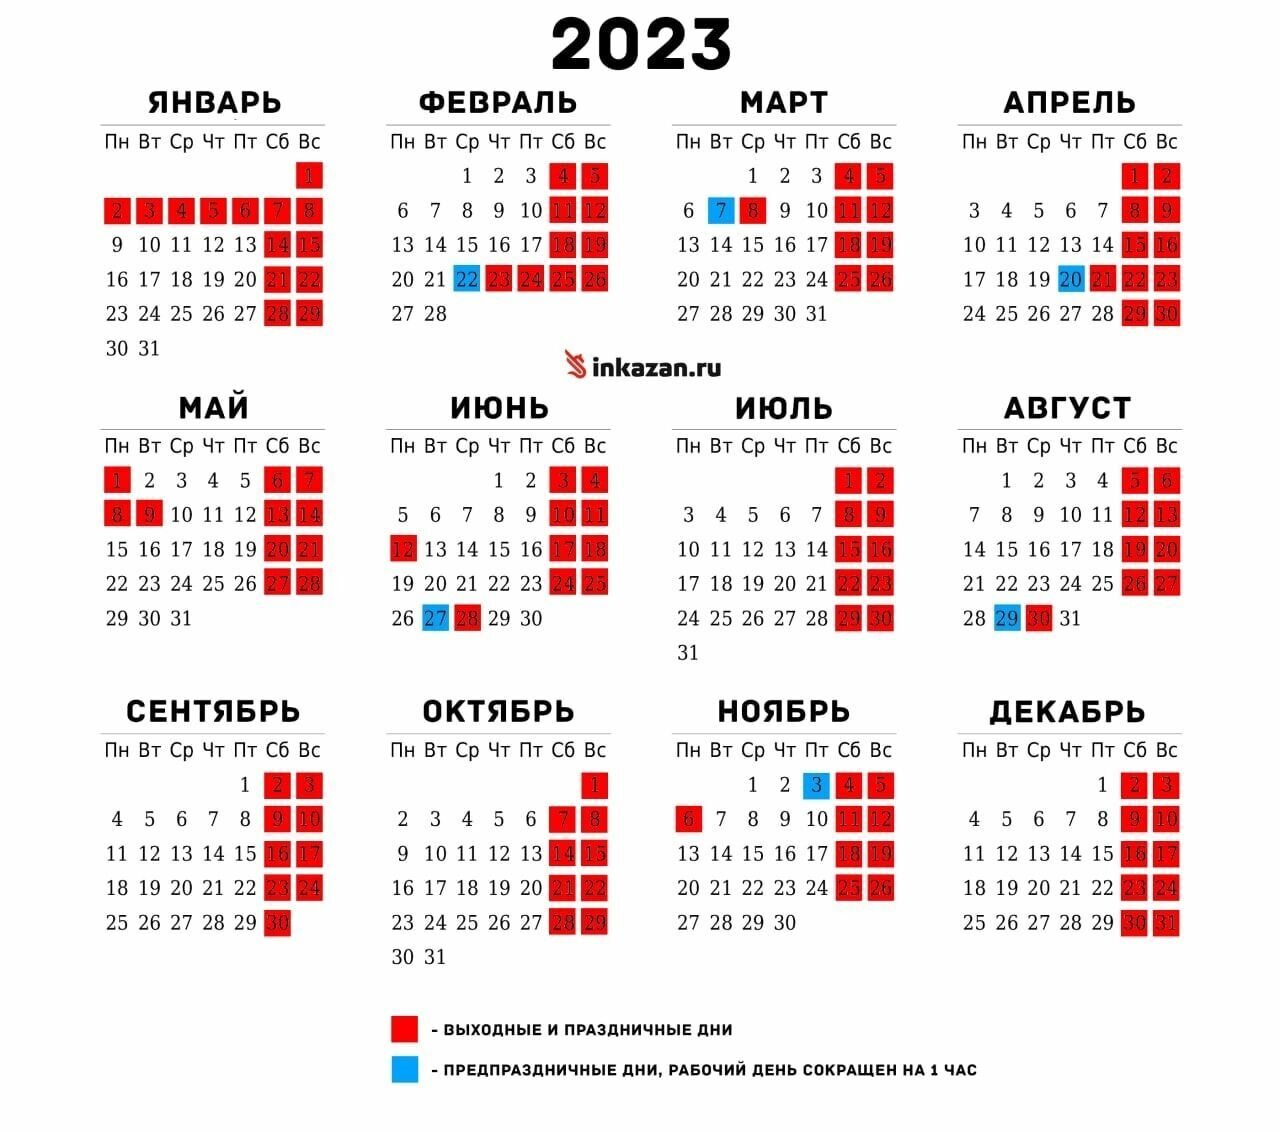 Выходные и праздничные дни в Татарстане на 2023 год